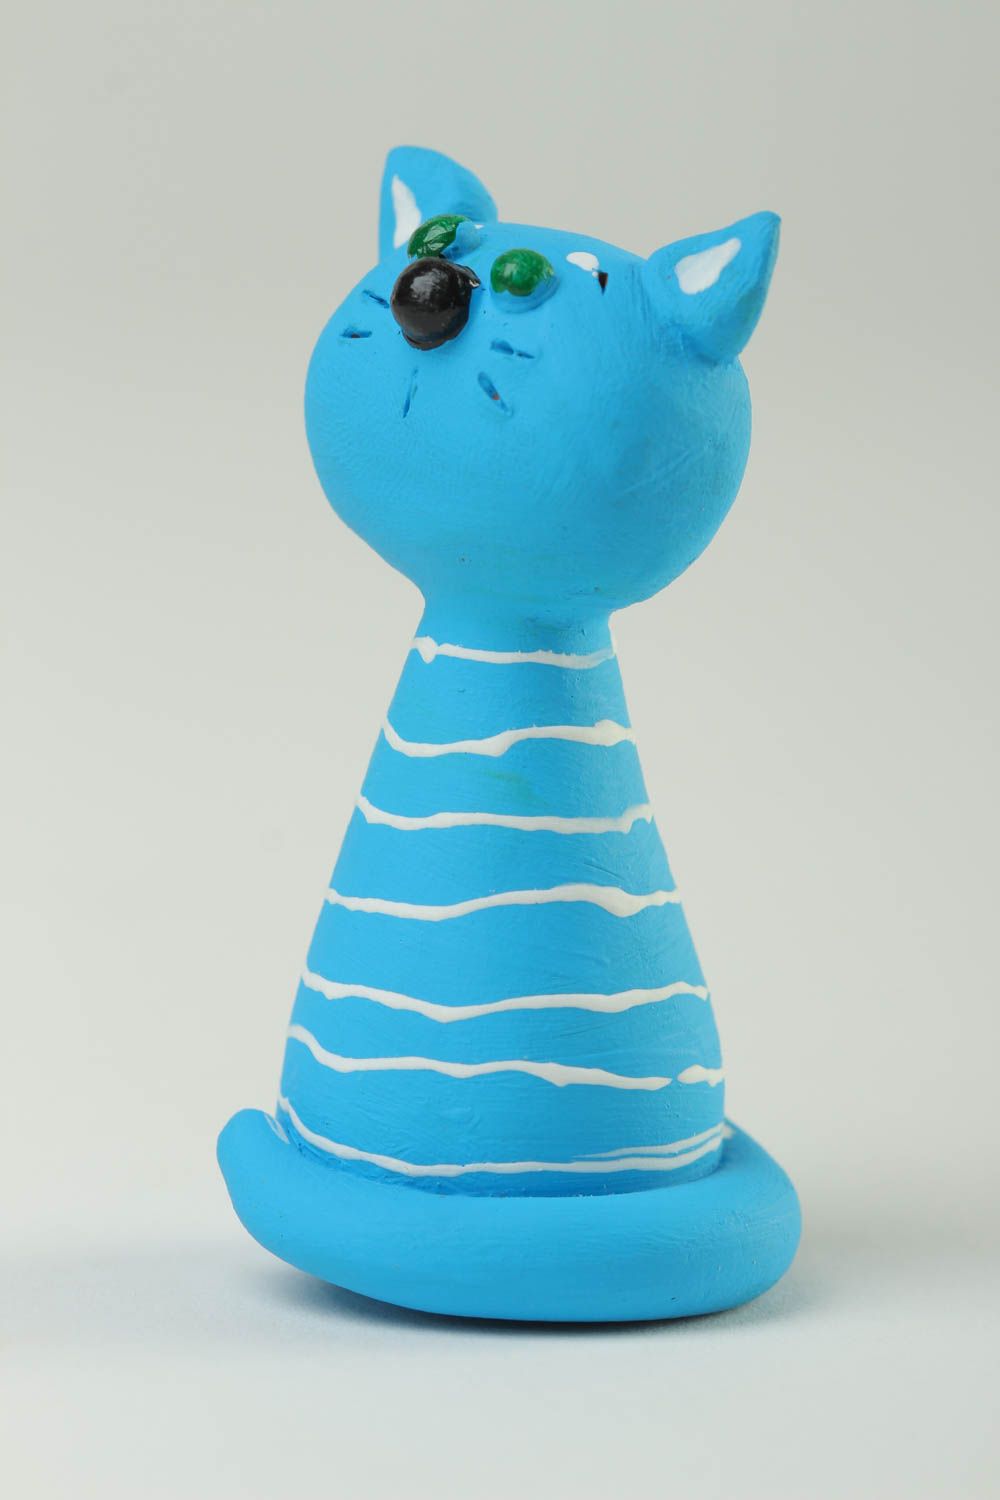 Statuette chat bleu faite main Figurine animal petite peinte rayée Déco maison photo 2